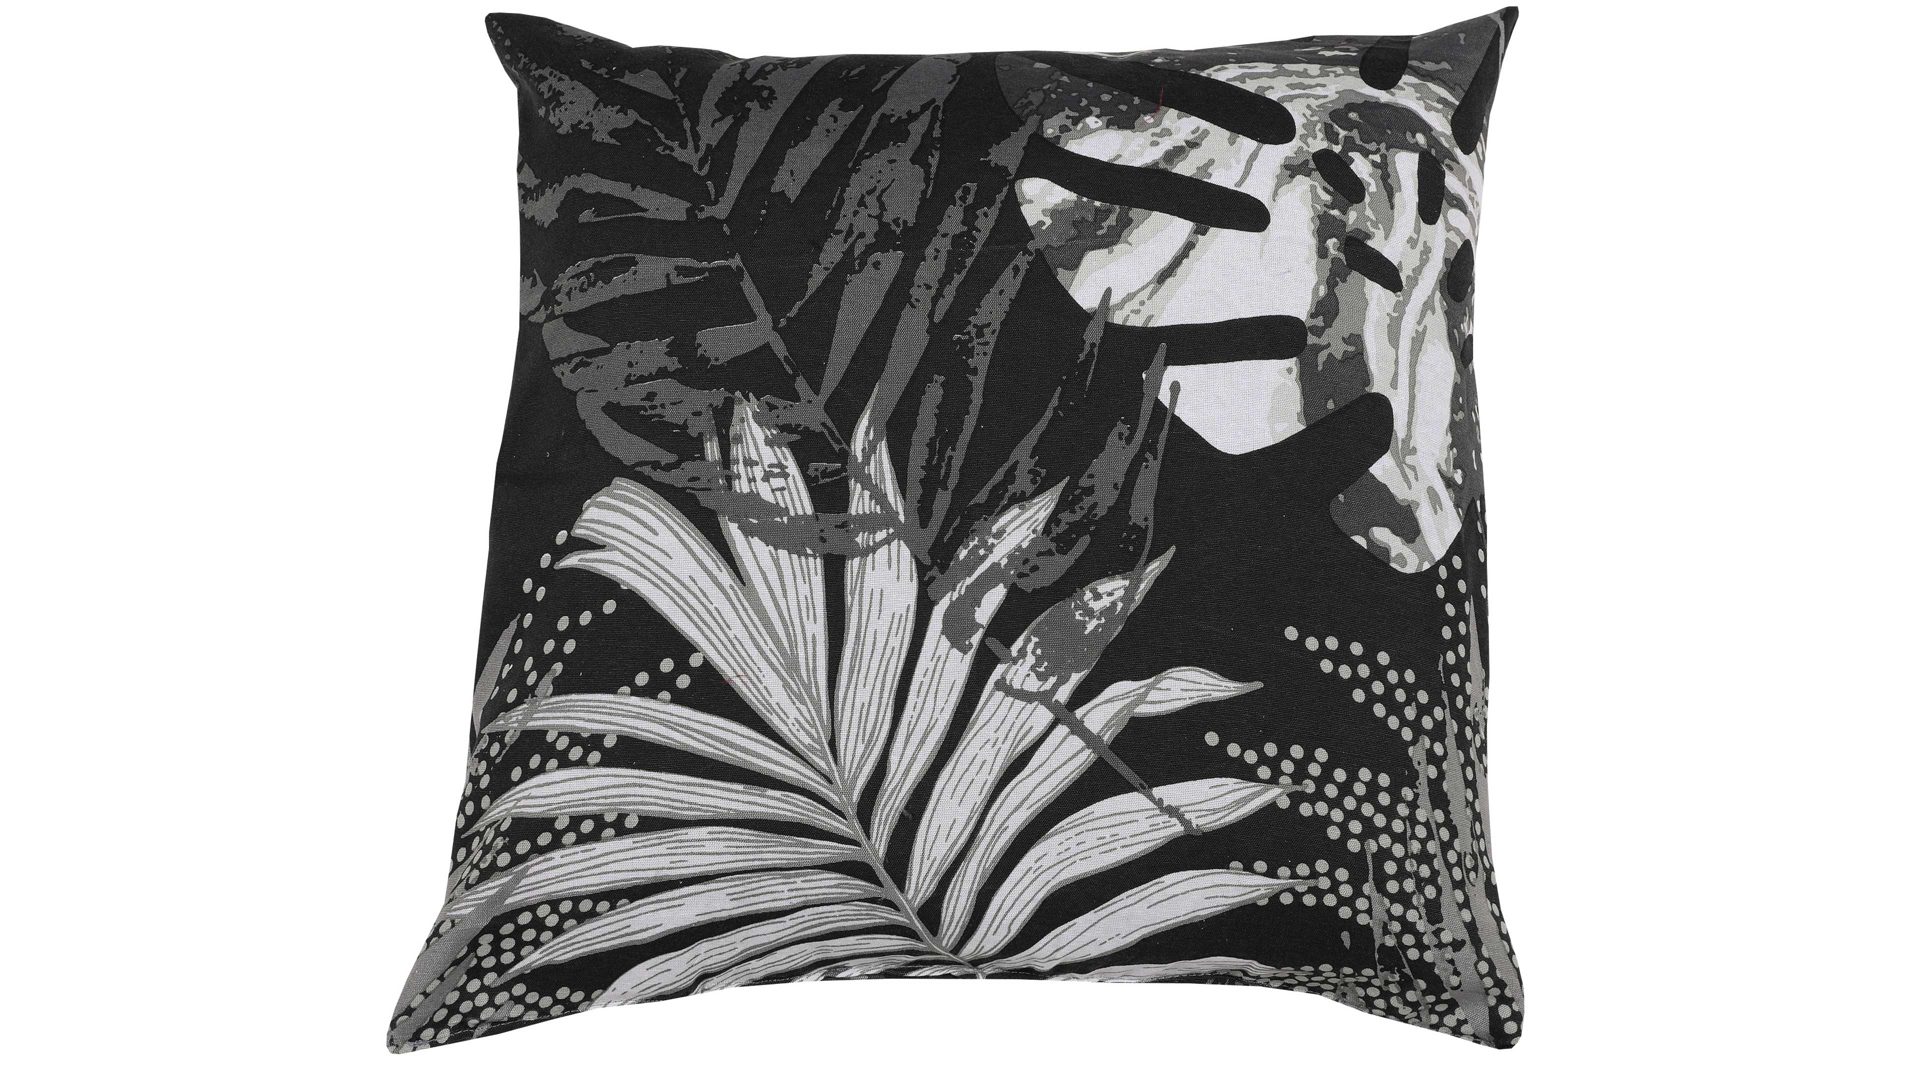 Einzelkissen Go-de textilgesellschaft aus Stoff in Schwarz GO-DE Textil-Serie 29 - Zierkissen schwarz-weißes Blättermotiv - ca. 48 x 48 cm